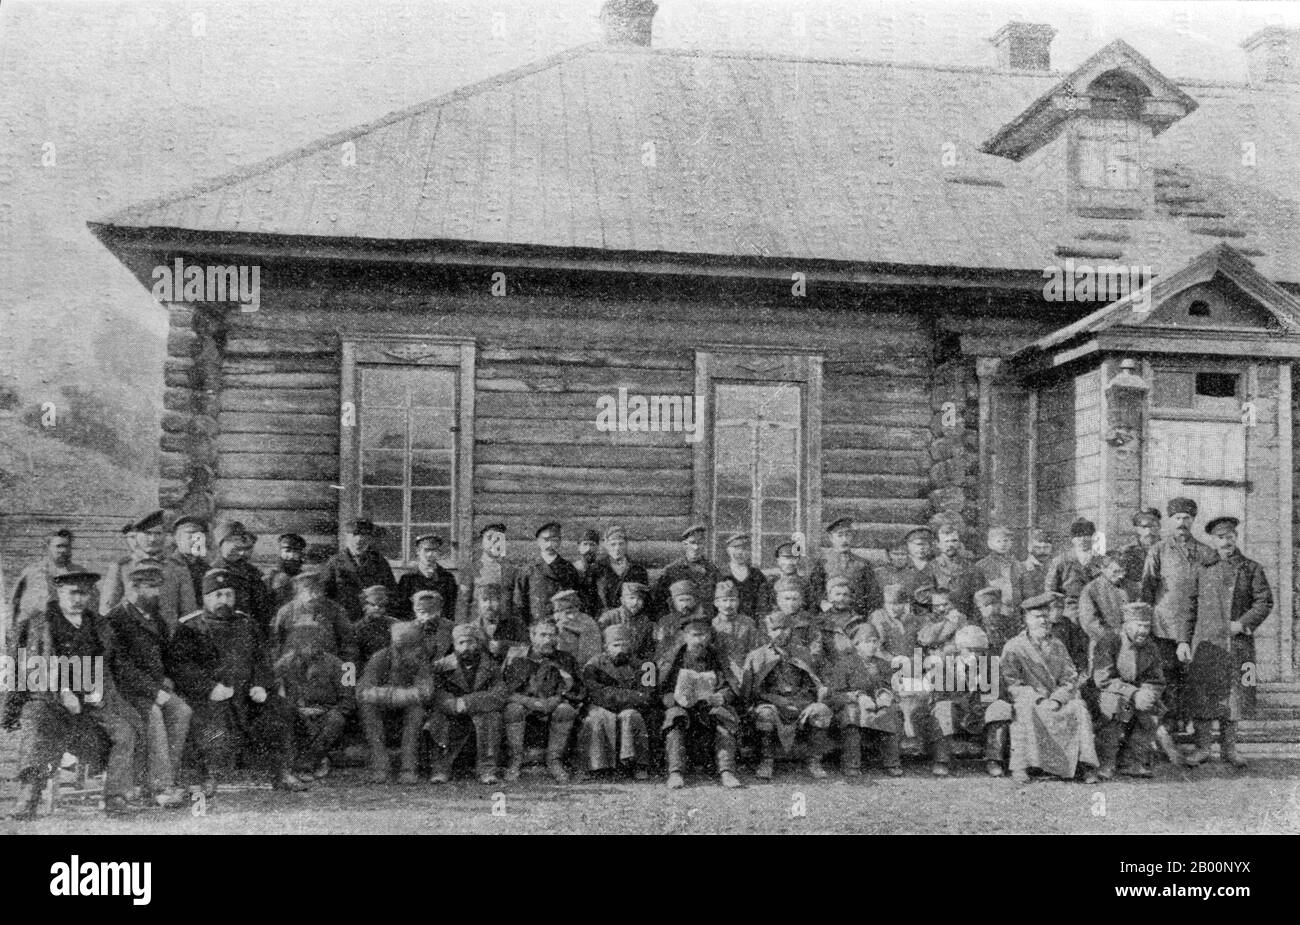 Russia: Coloni russi a Sakhalin. Vlas Mikhailovich Doroshevich, 1905. Sakhalin, anche Saghalien, è una grande isola del Pacifico settentrionale, che fa ufficialmente parte della Russia, amministrata come parte di Sakhalin Oblast. Le popolazioni indigene dell'isola sono Sakhalin Ainu, Oroks e Nivkh. La maggior parte degli Ainu si spostarono a Hokkaidō quando i giapponesi furono spostati dall'isola nel 1949. Sakhalin è stato rivendicato sia dalla Russia che dal Giappone nel corso del XIX e XX secolo, che ha portato a aspri dispute tra i due paesi sul controllo dell'isola. Foto Stock